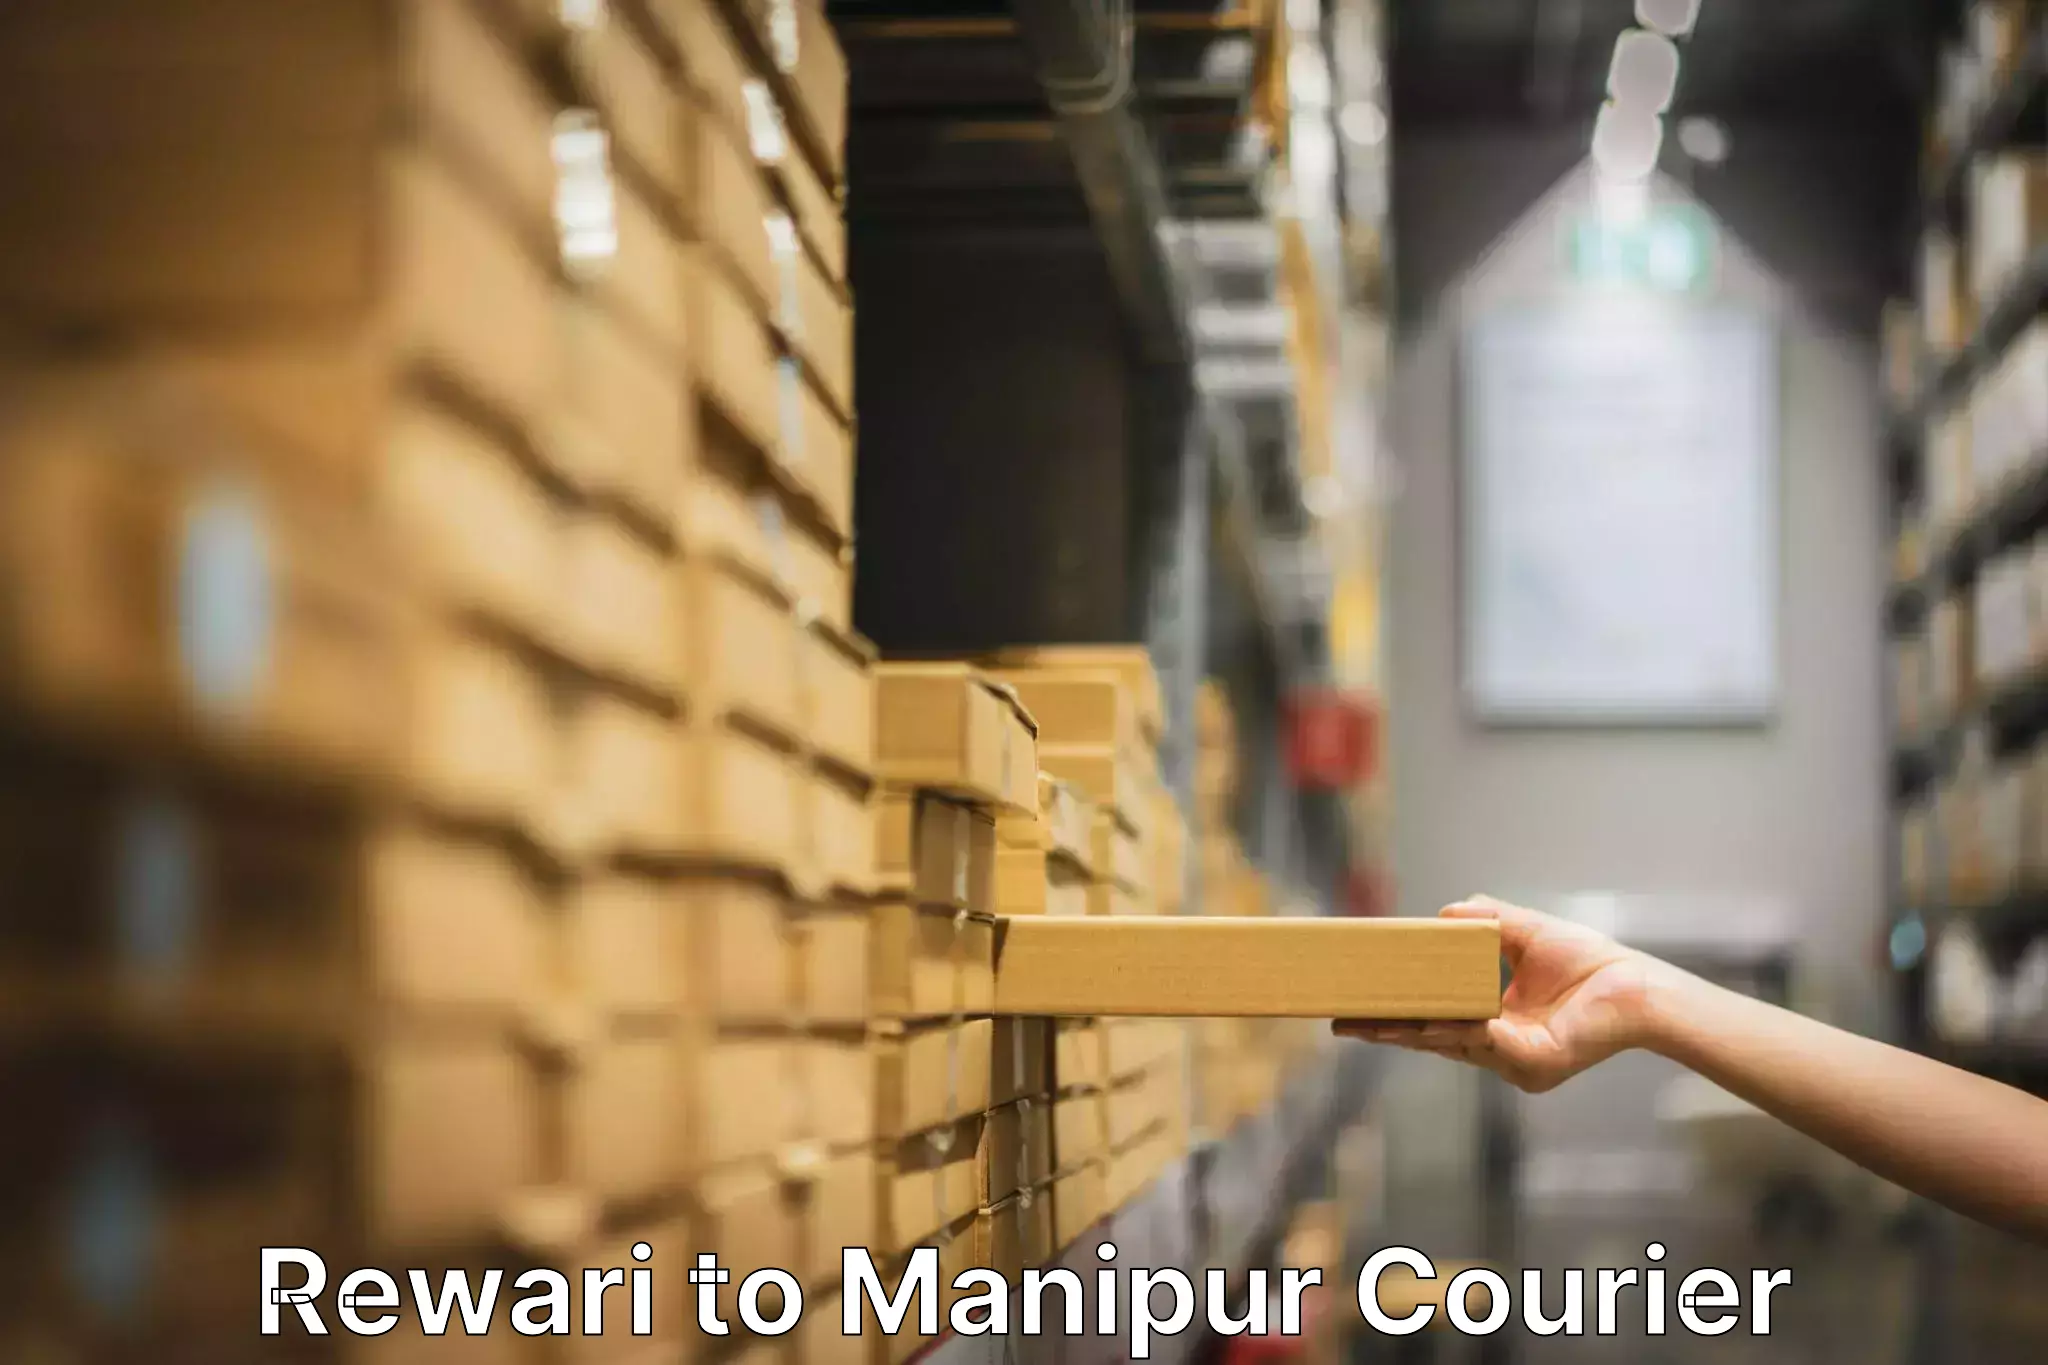 Furniture moving experts Rewari to Moirang